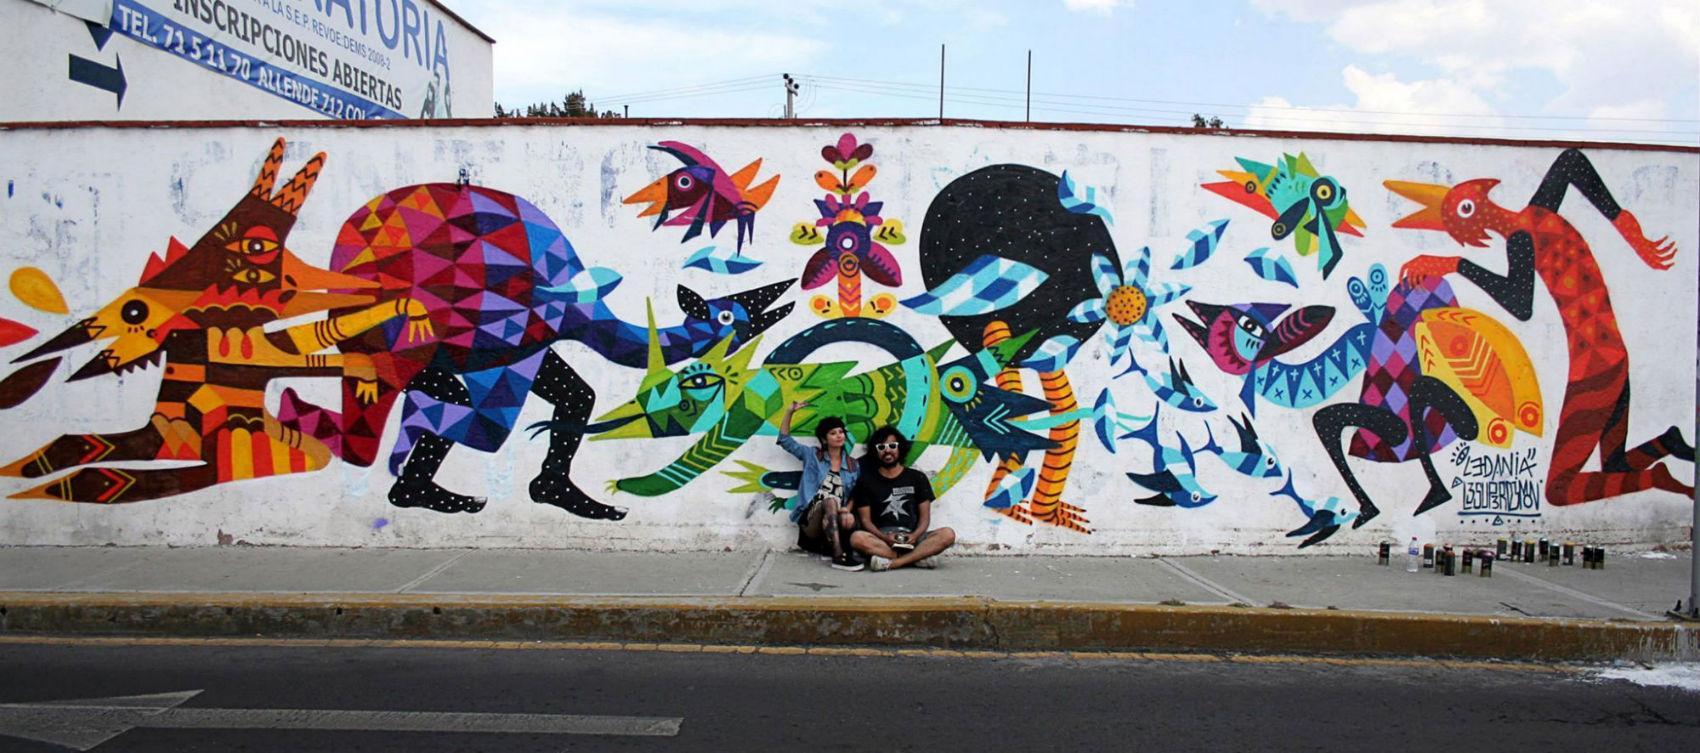 Art by LeDania, Bogotá